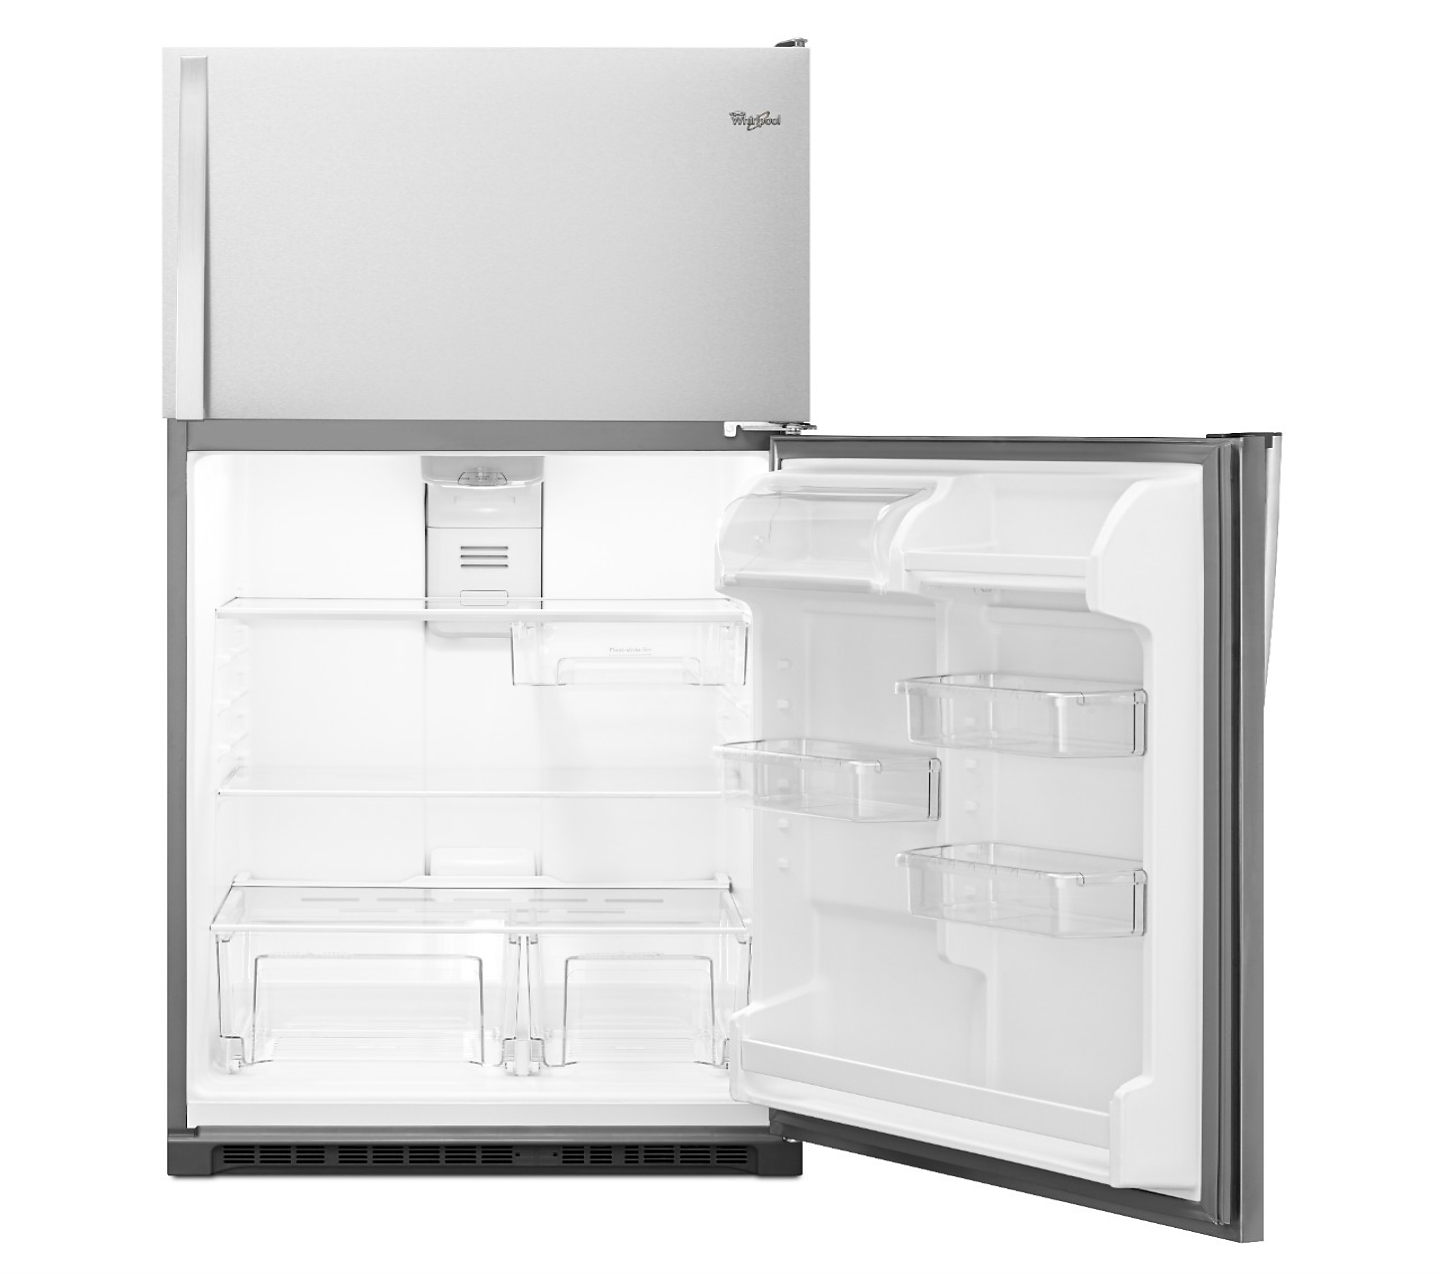 Whirlpool® Top Freezer Refrigerator with door open